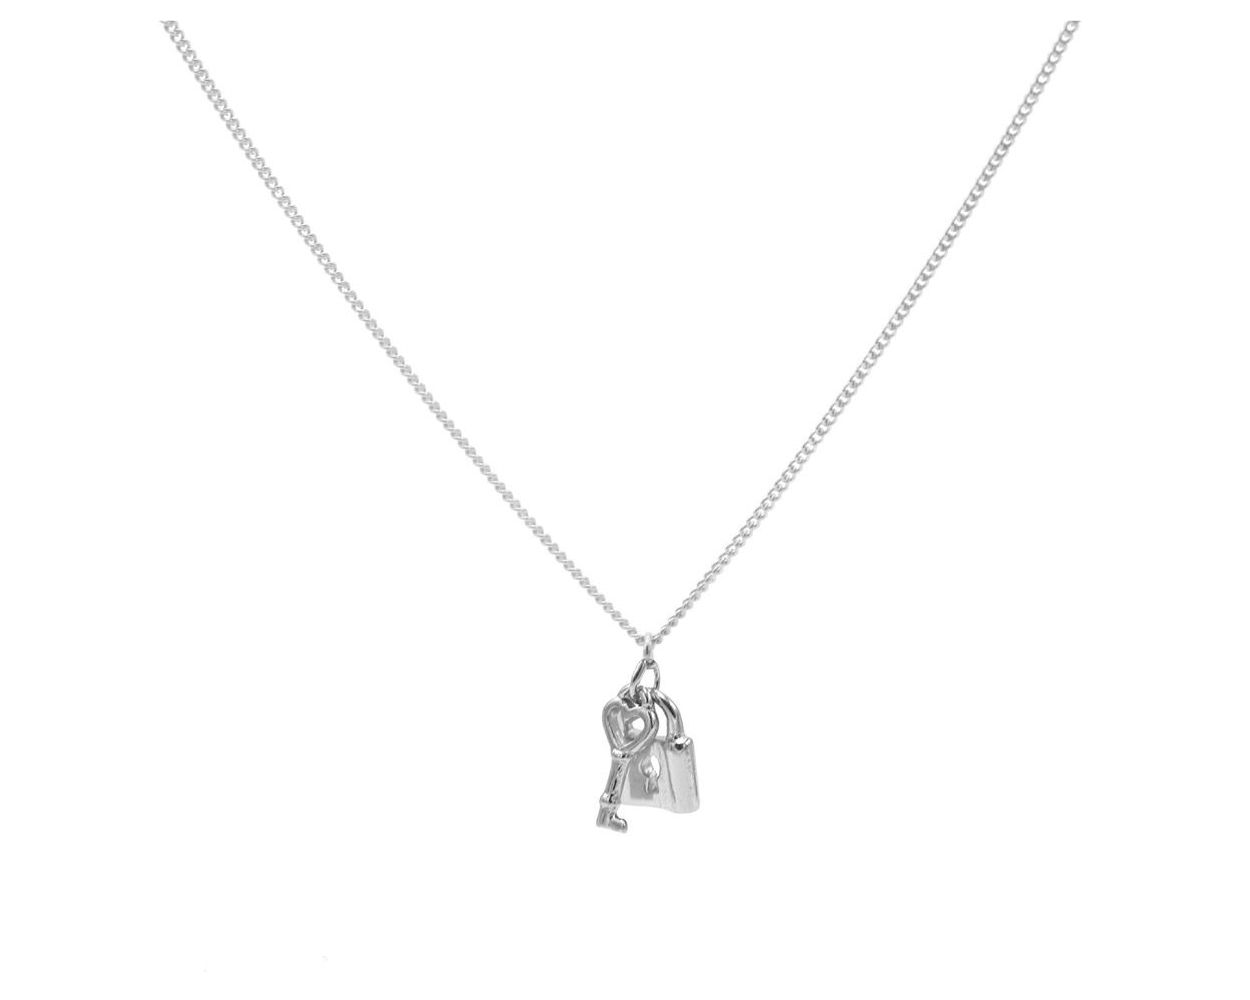 Karma Necklace Key Lock - Silver